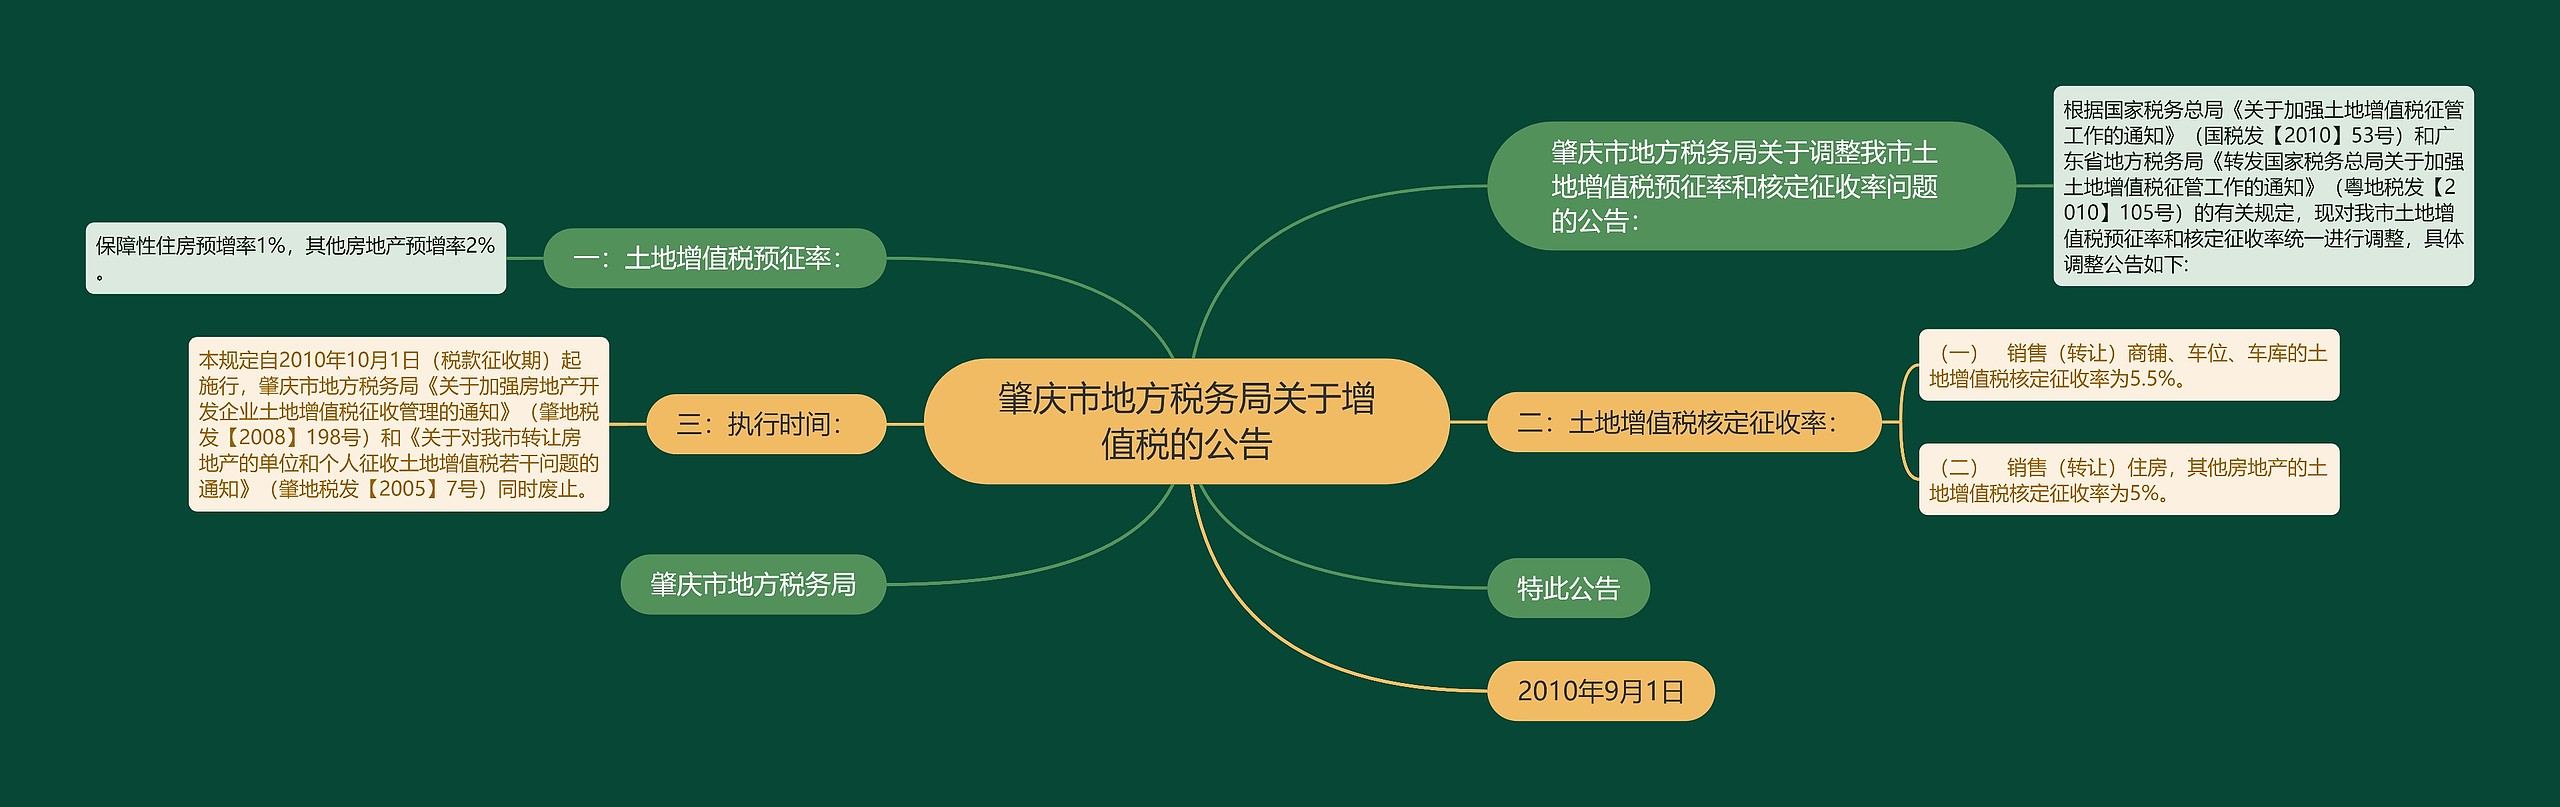 肇庆市地方税务局关于增值税的公告